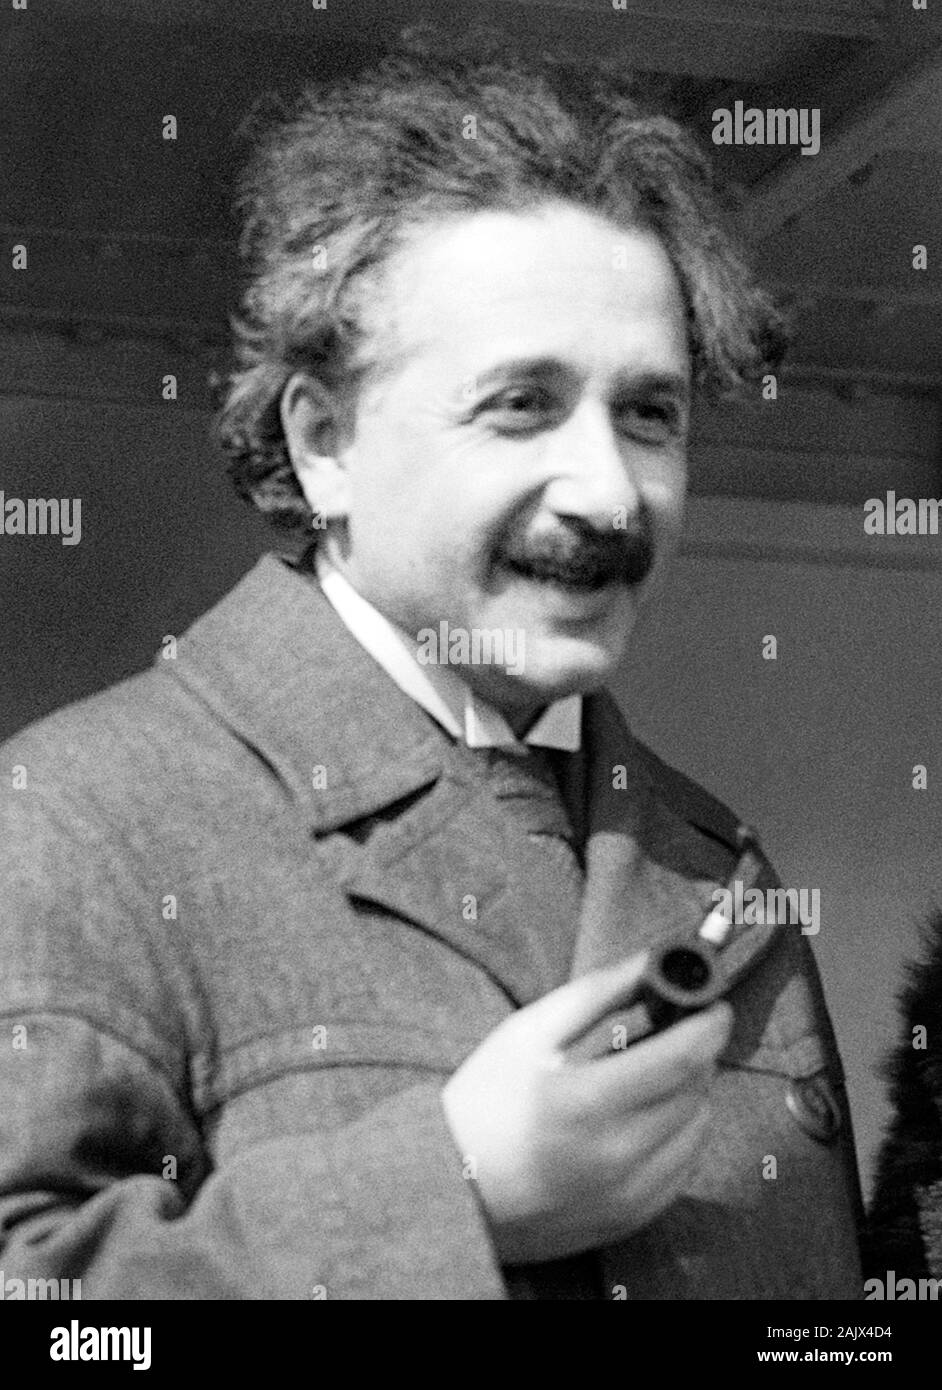 Foto d'epoca del teorico fisico Albert Einstein (1879 - 1955). Foto di Bain News Service presi in aprile 1921 al suo arrivo a New York. Foto Stock